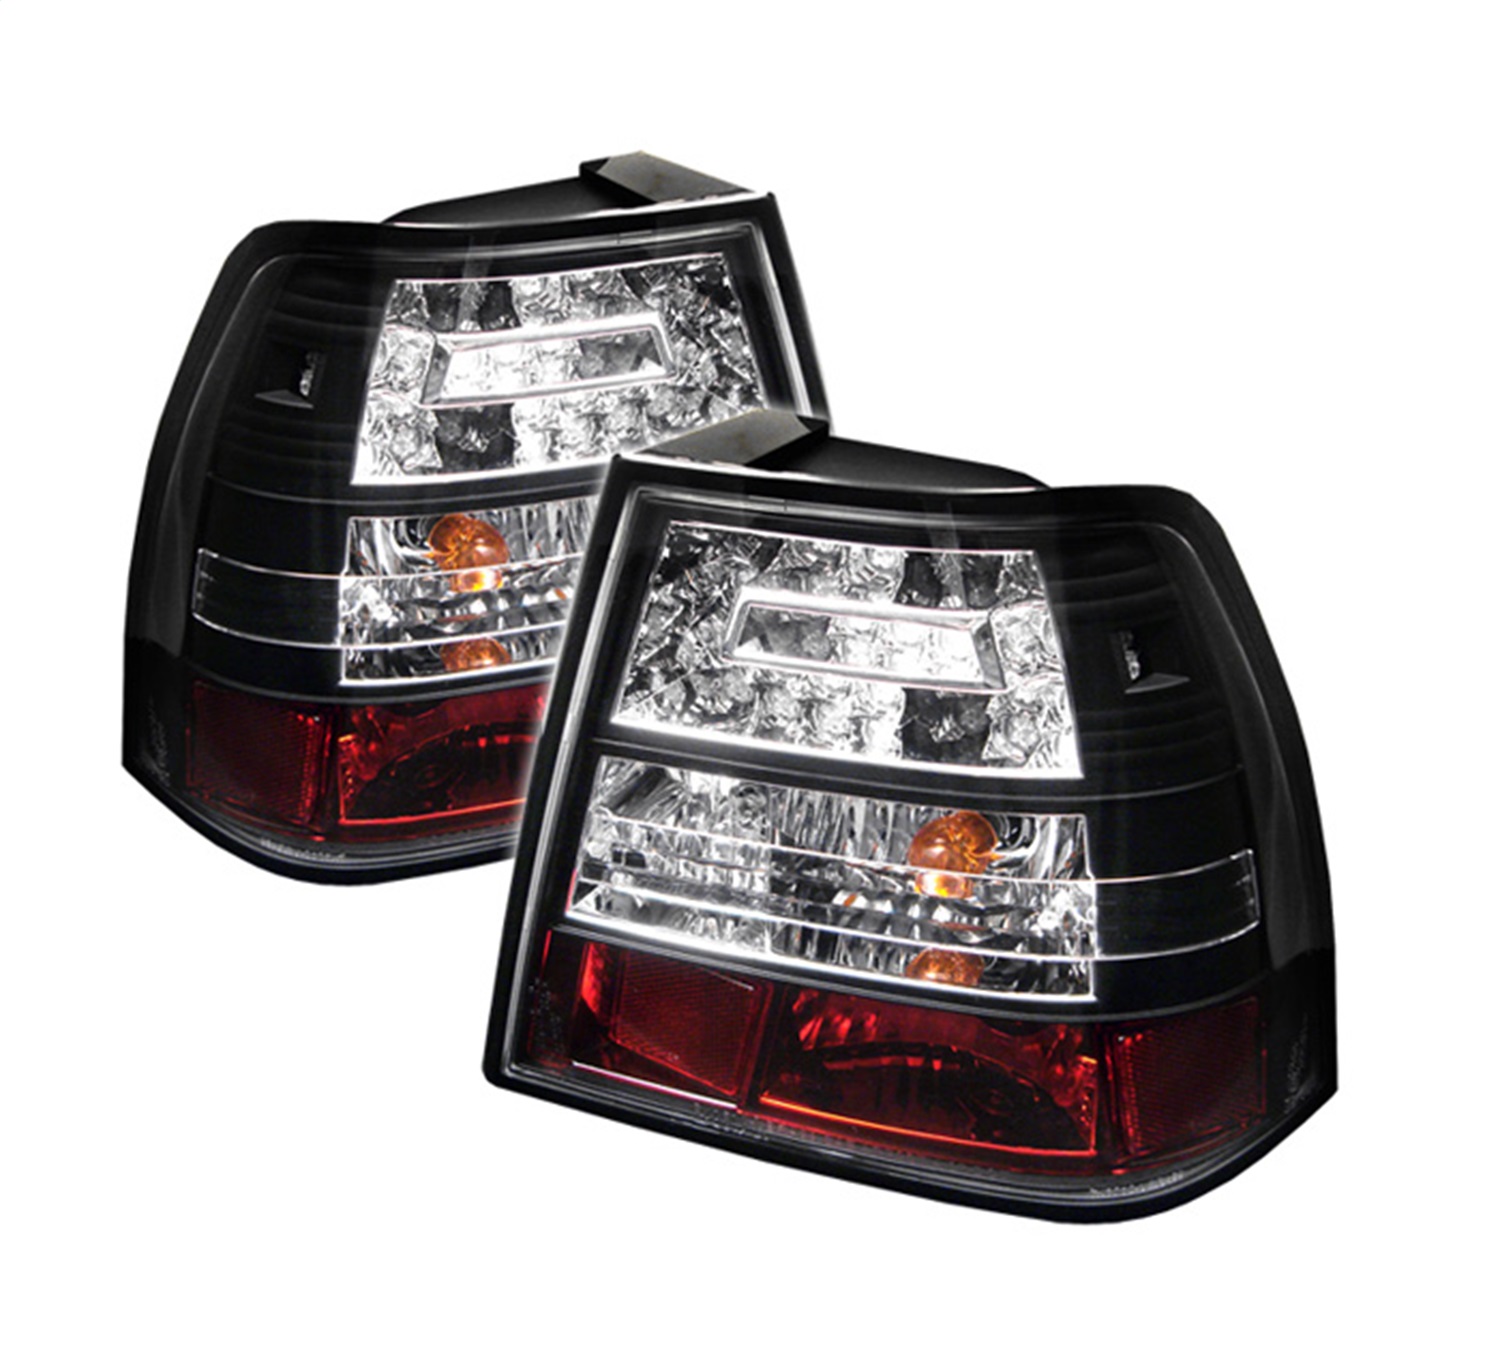 Spyder Auto 5008411 LED Tail Lights Fits 99-04 Jetta